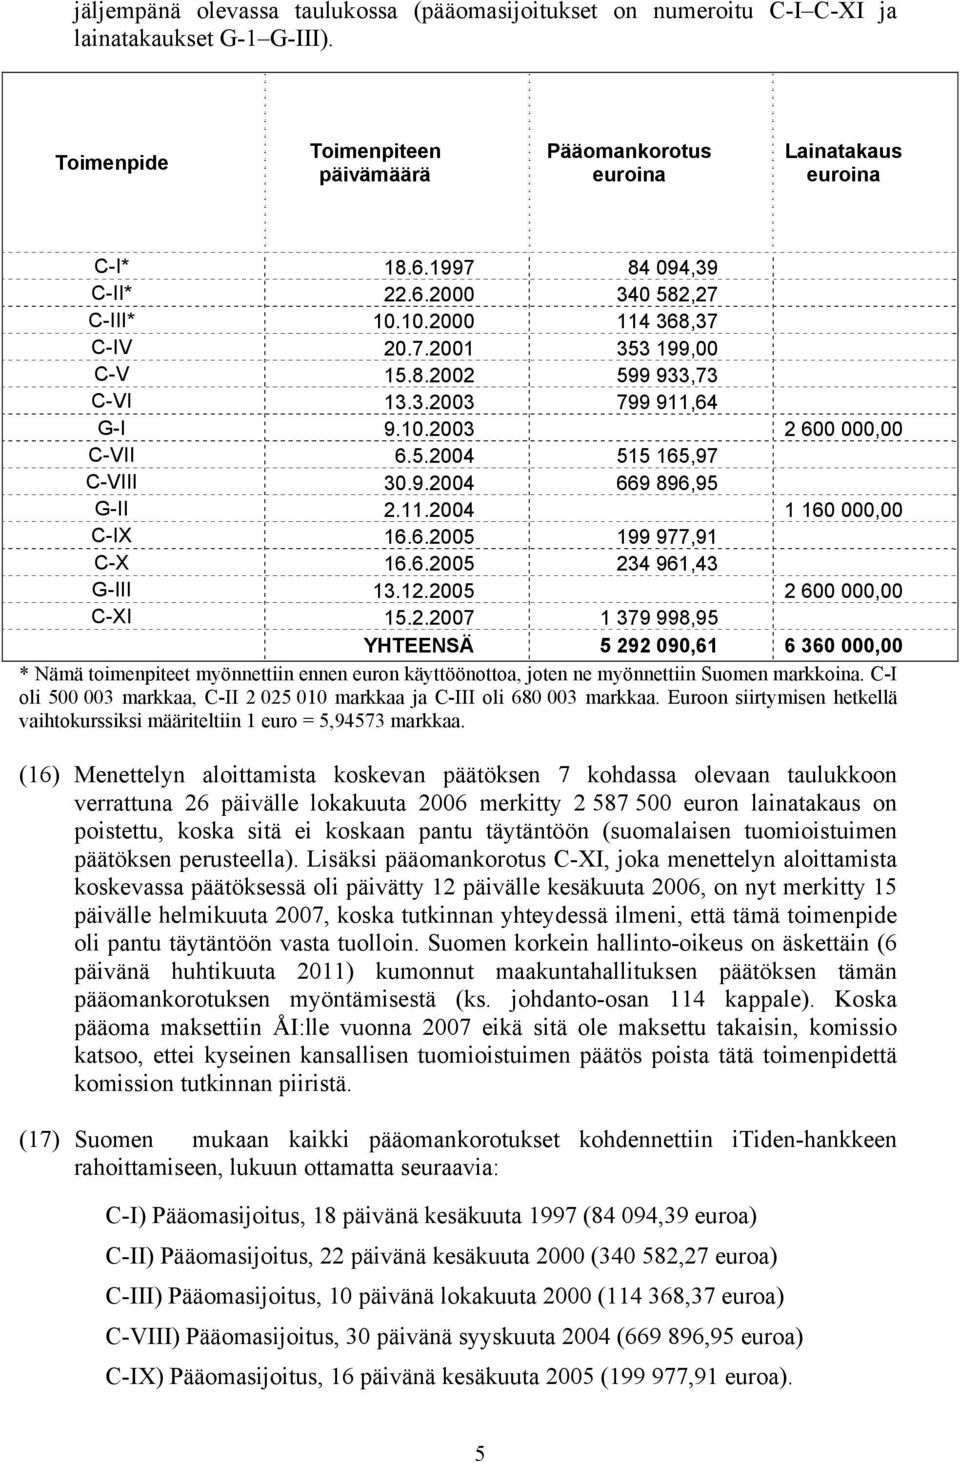 9.2004 669 896,95 G-II 2.11.2004 1 160 000,00 C-IX 16.6.2005 199 977,91 C-X 16.6.2005 234 961,43 G-III 13.12.2005 2 600 000,00 C-XI 15.2.2007 1 379 998,95 YHTEENSÄ 5 292 090,61 6 360 000,00 * Nämä toimenpiteet myönnettiin ennen euron käyttöönottoa, joten ne myönnettiin Suomen markkoina.